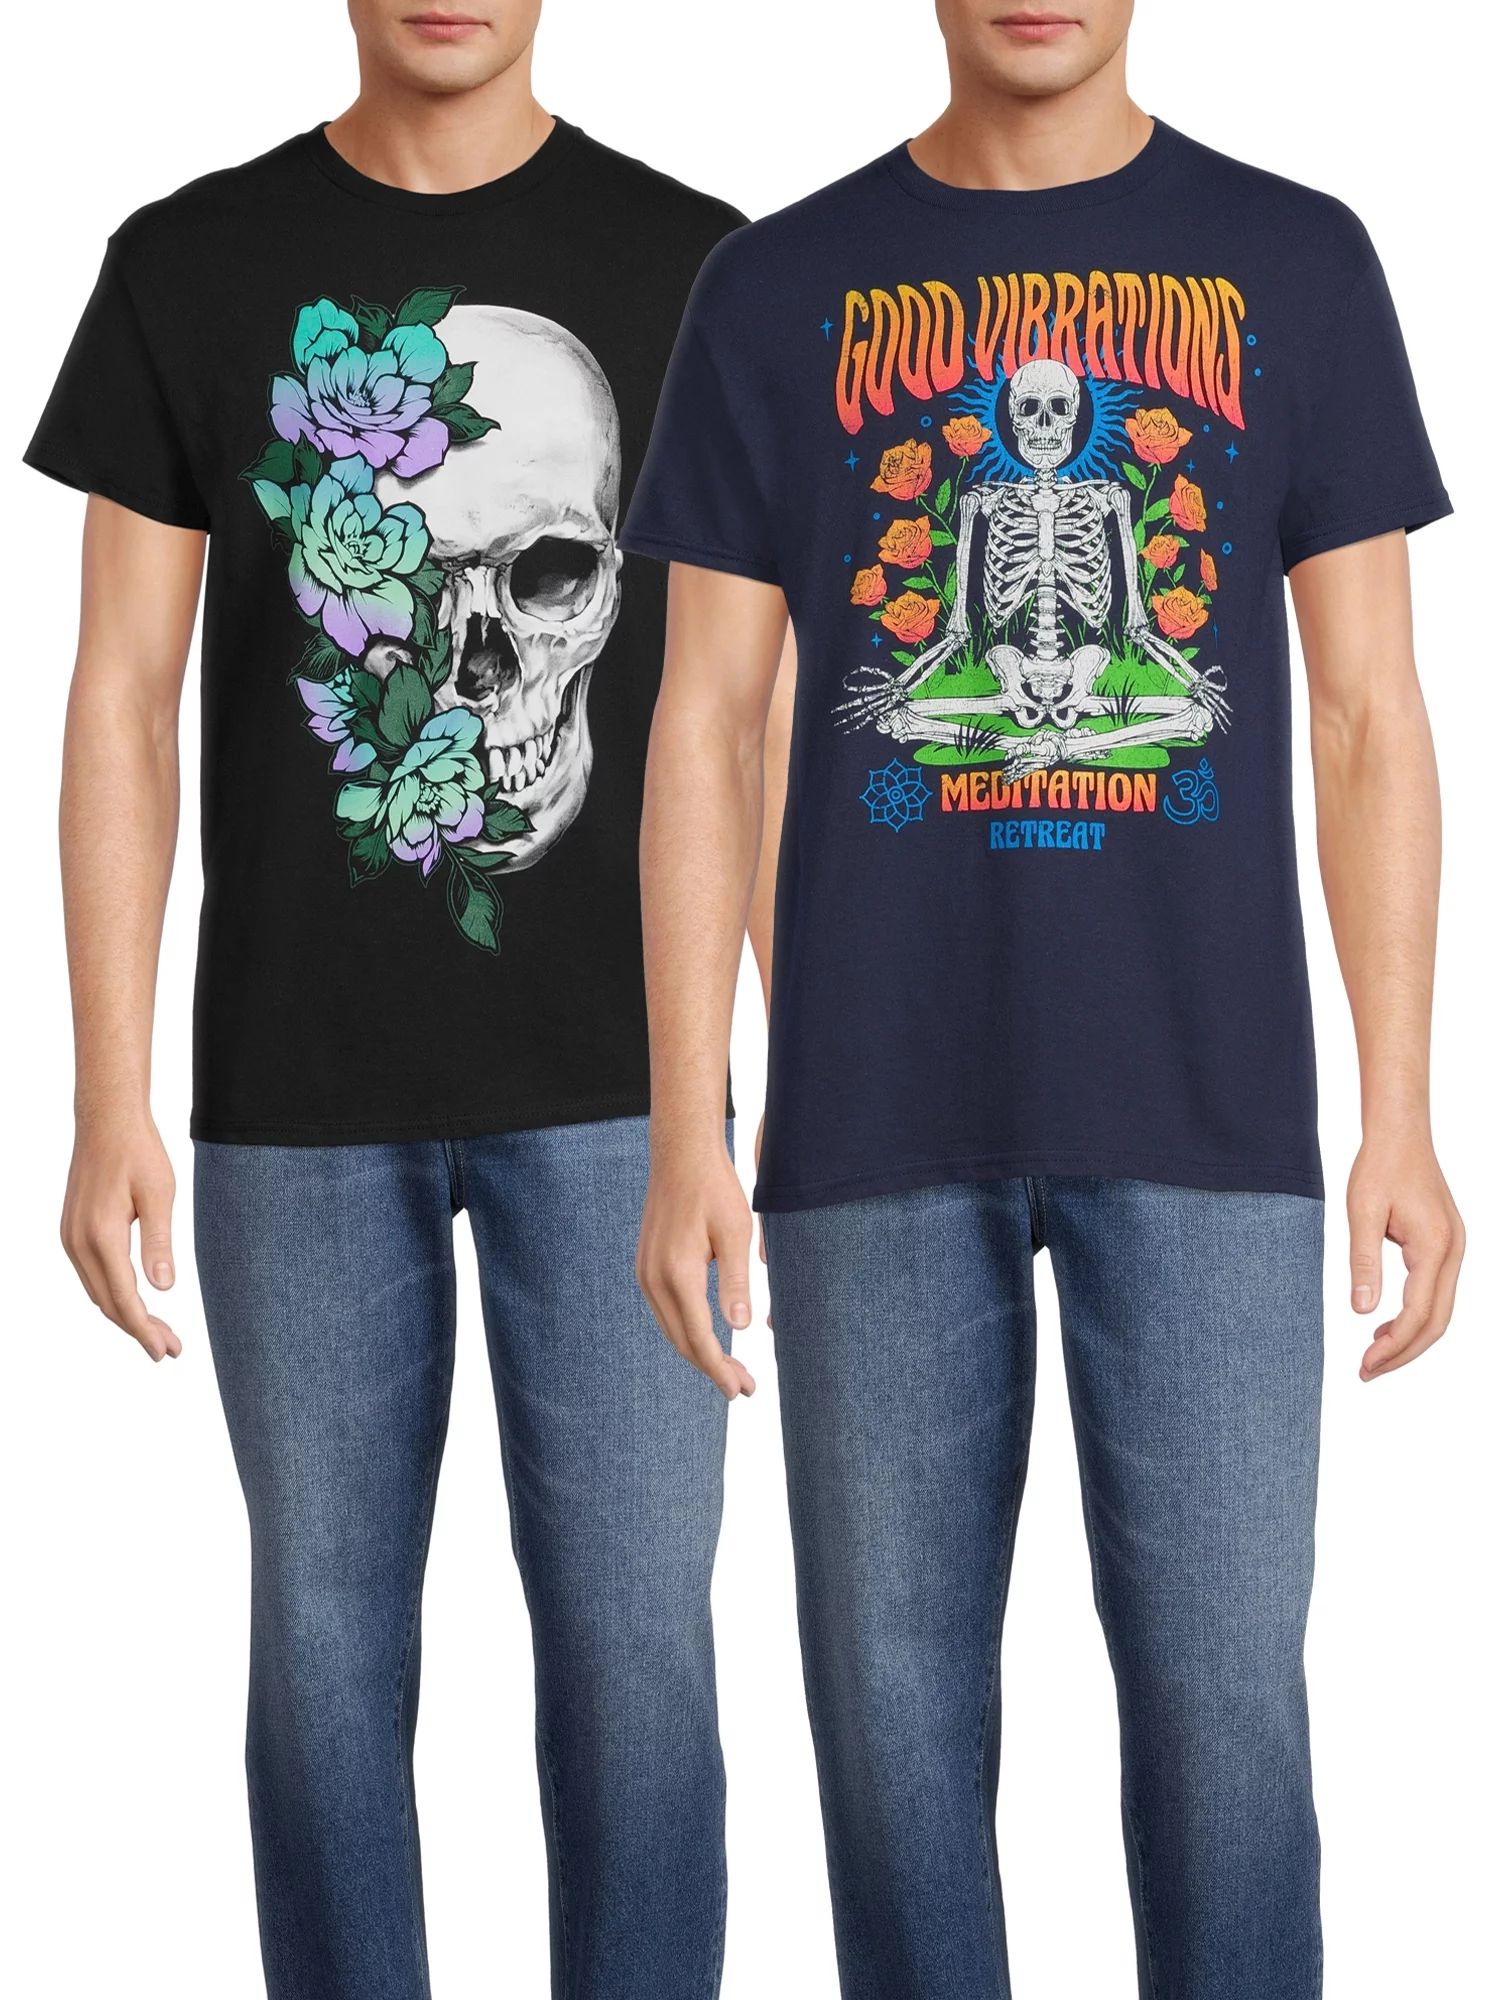 Good Vibrations Skeleton & Flower Skull Short Sleeve Men's Graphic Tees, 2-Pack | Walmart (US)